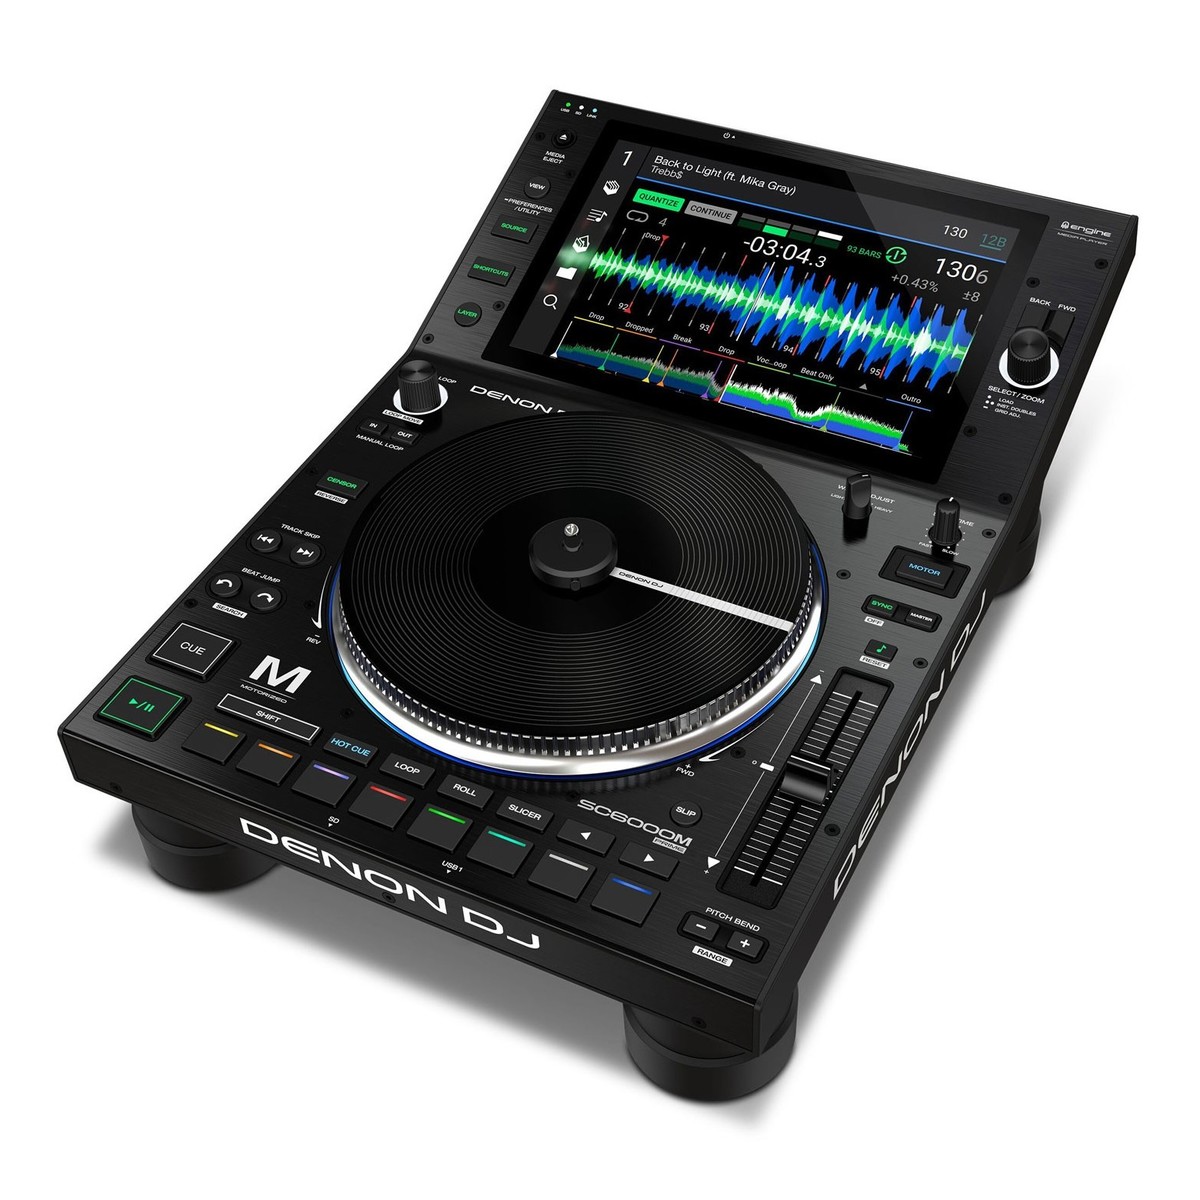 DENON DJ SC6000 M PRIME LETTORE MEDIA PLAYER DUAL LAYER CON PIATTO MOTORIZZATO PER DJ USB SD STREAMING WI-FI DISPLAY HD 10.1 2